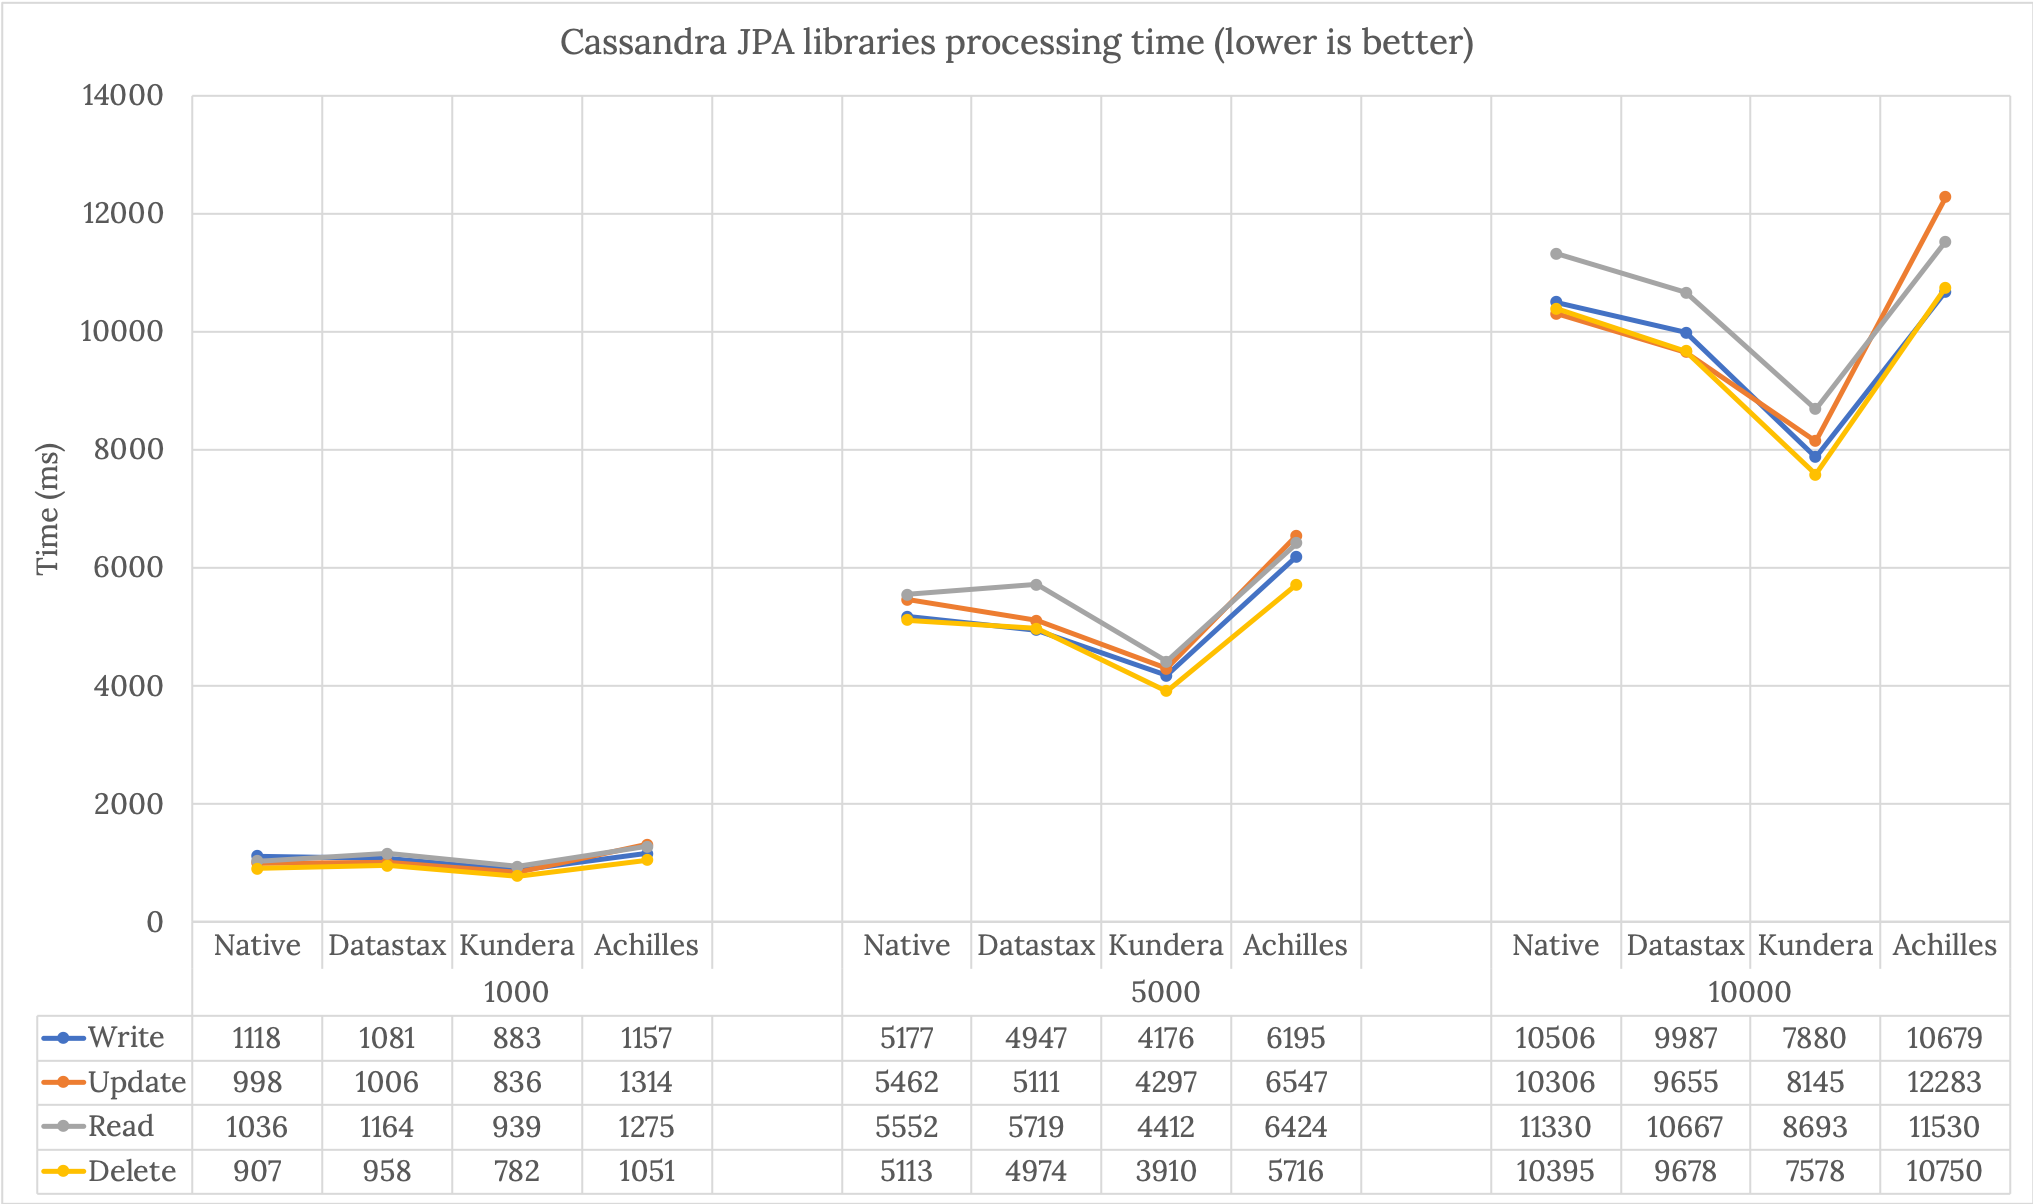 Comparison of Cassandra JPA libraries time